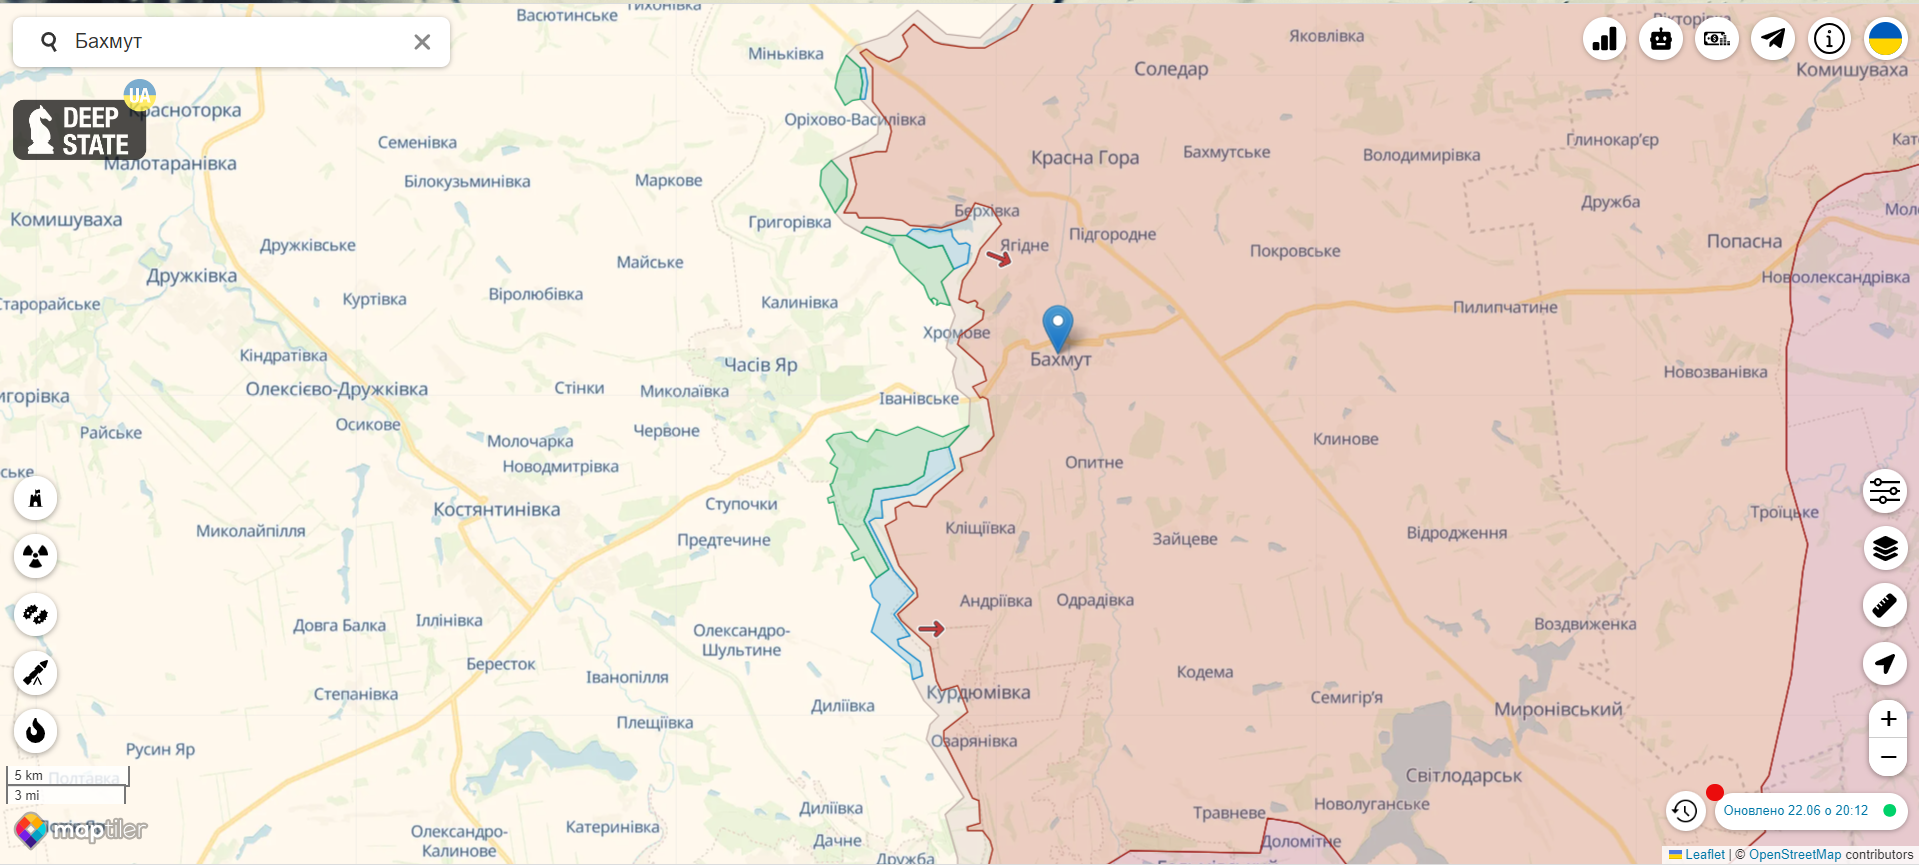 Війська РФ намагалися наступати в районі Білогорівки, але отримали відсіч від ЗСУ:  Генштаб розповів про ситуацію на фронті. Карта